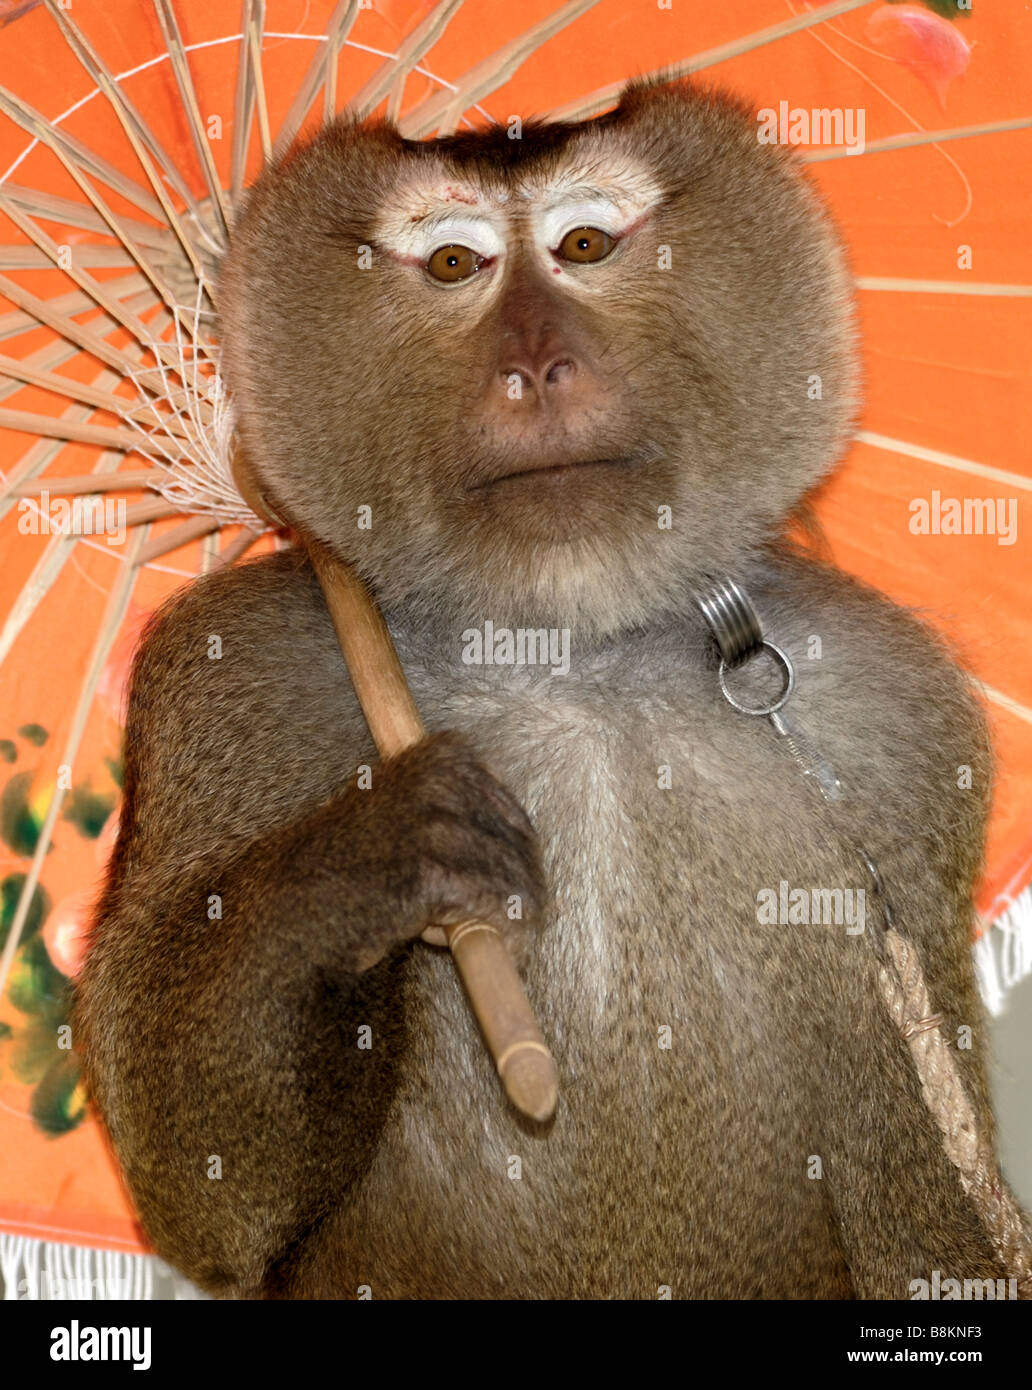 Monkey sosteniendo un paraguas Fotografía de stock - Alamy